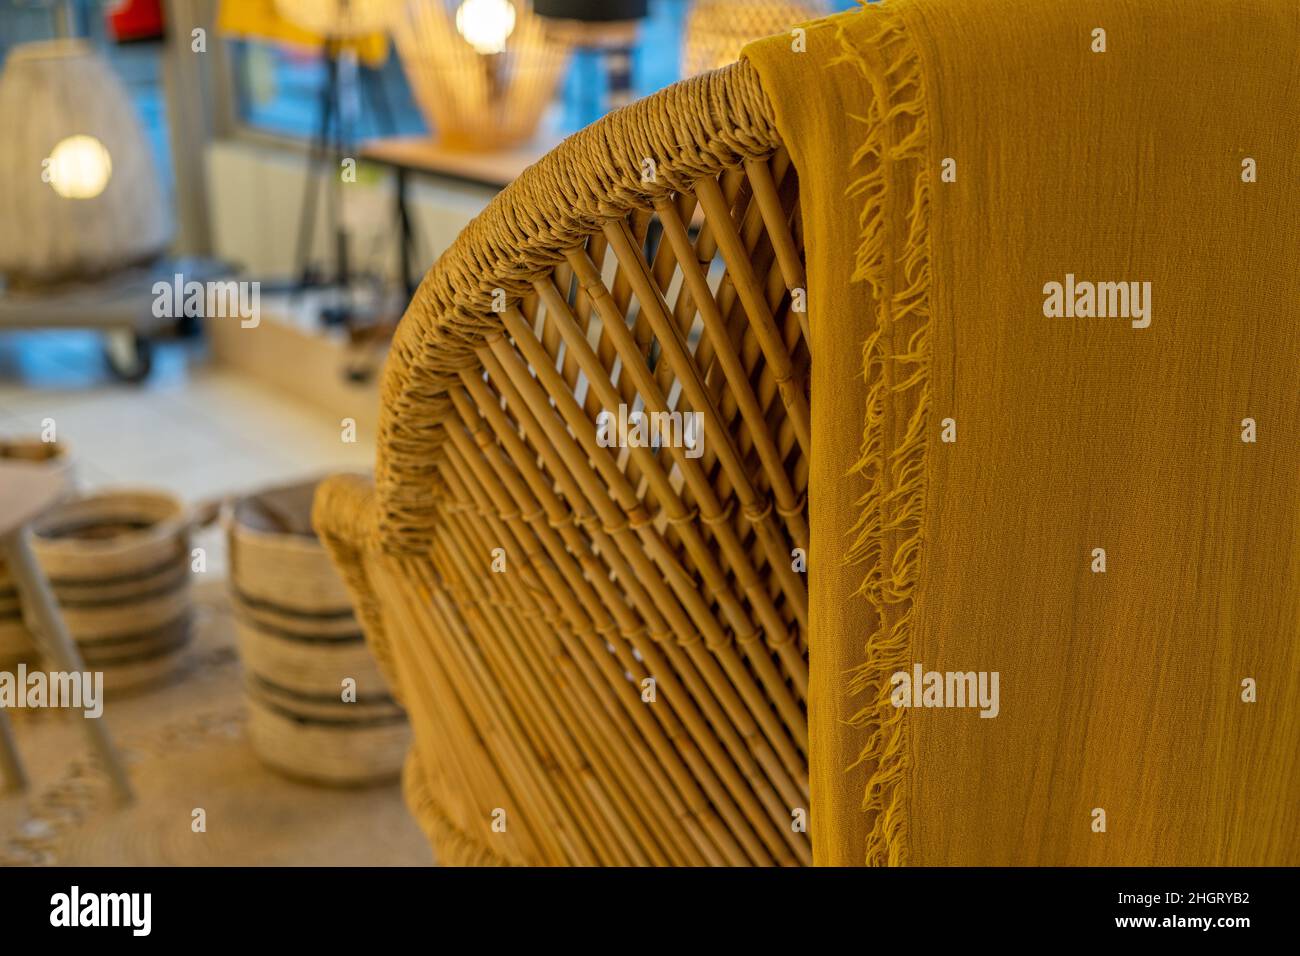 Sedie in vimini fatte a mano sul negozio, texture di lusso in bambù. Foto di alta qualità Foto Stock